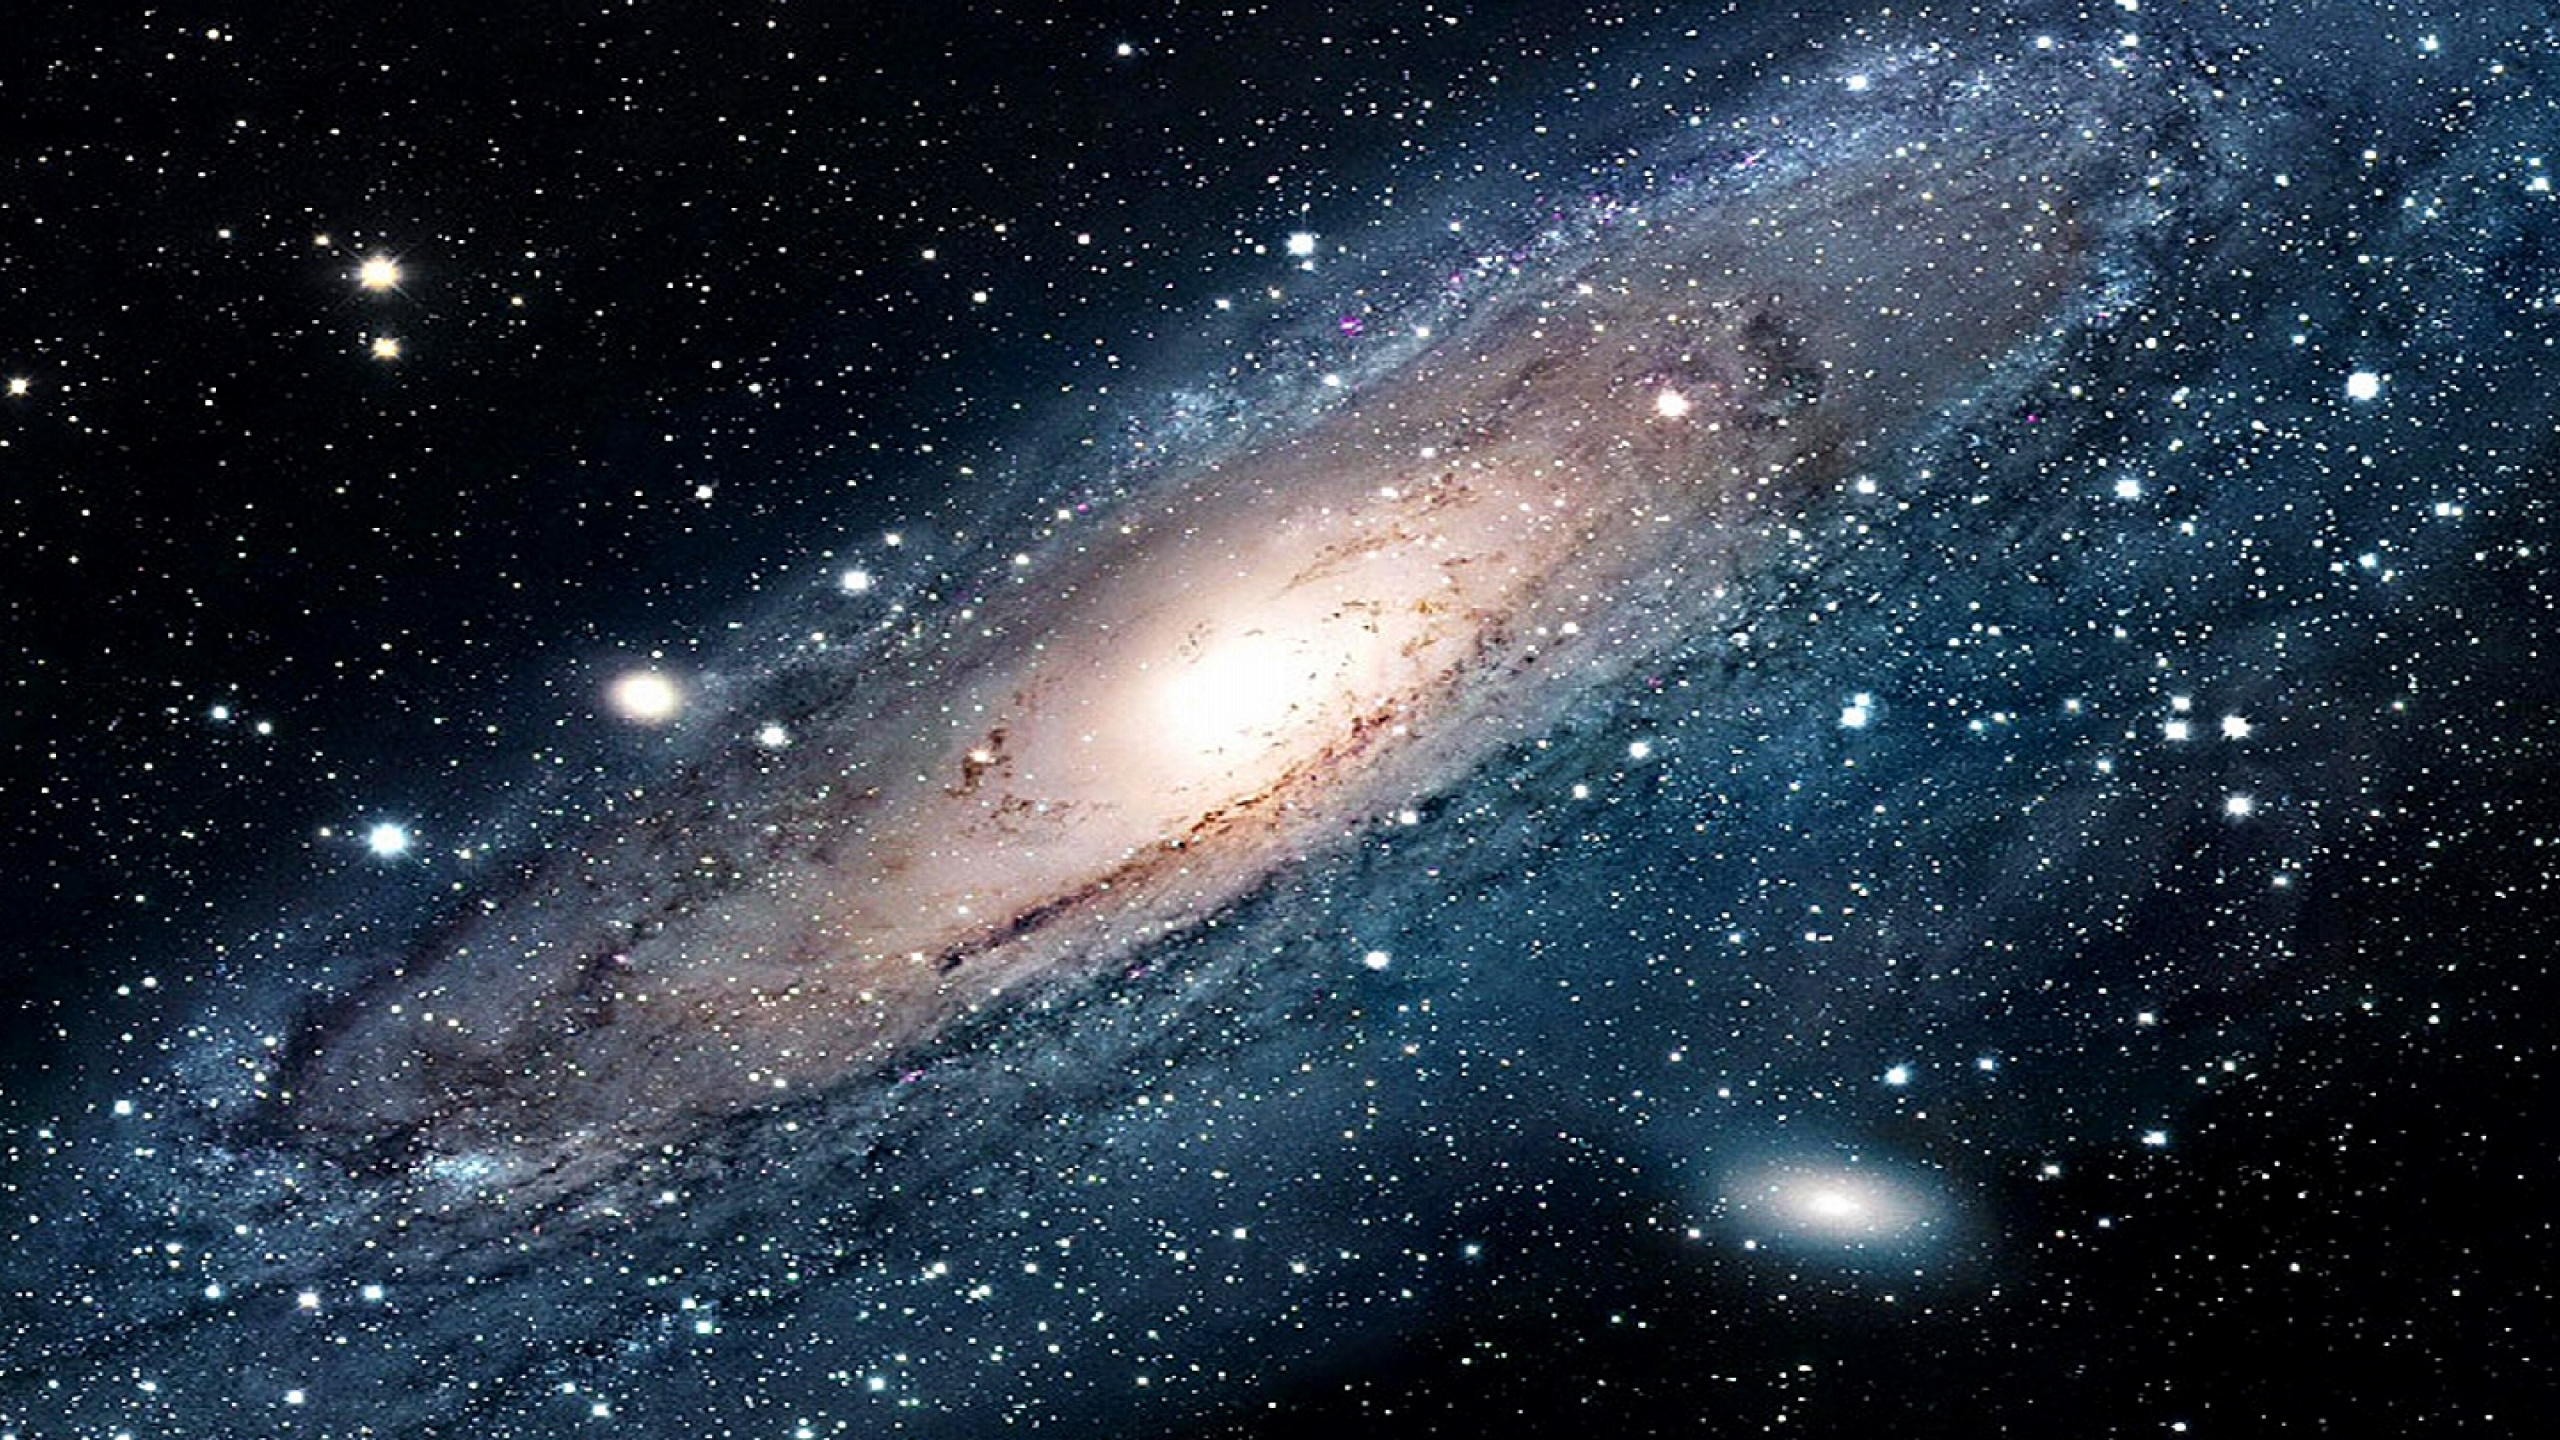 外层空间, 螺旋星系, 气氛, 宇宙, 天文学对象 壁纸 2560x1440 允许